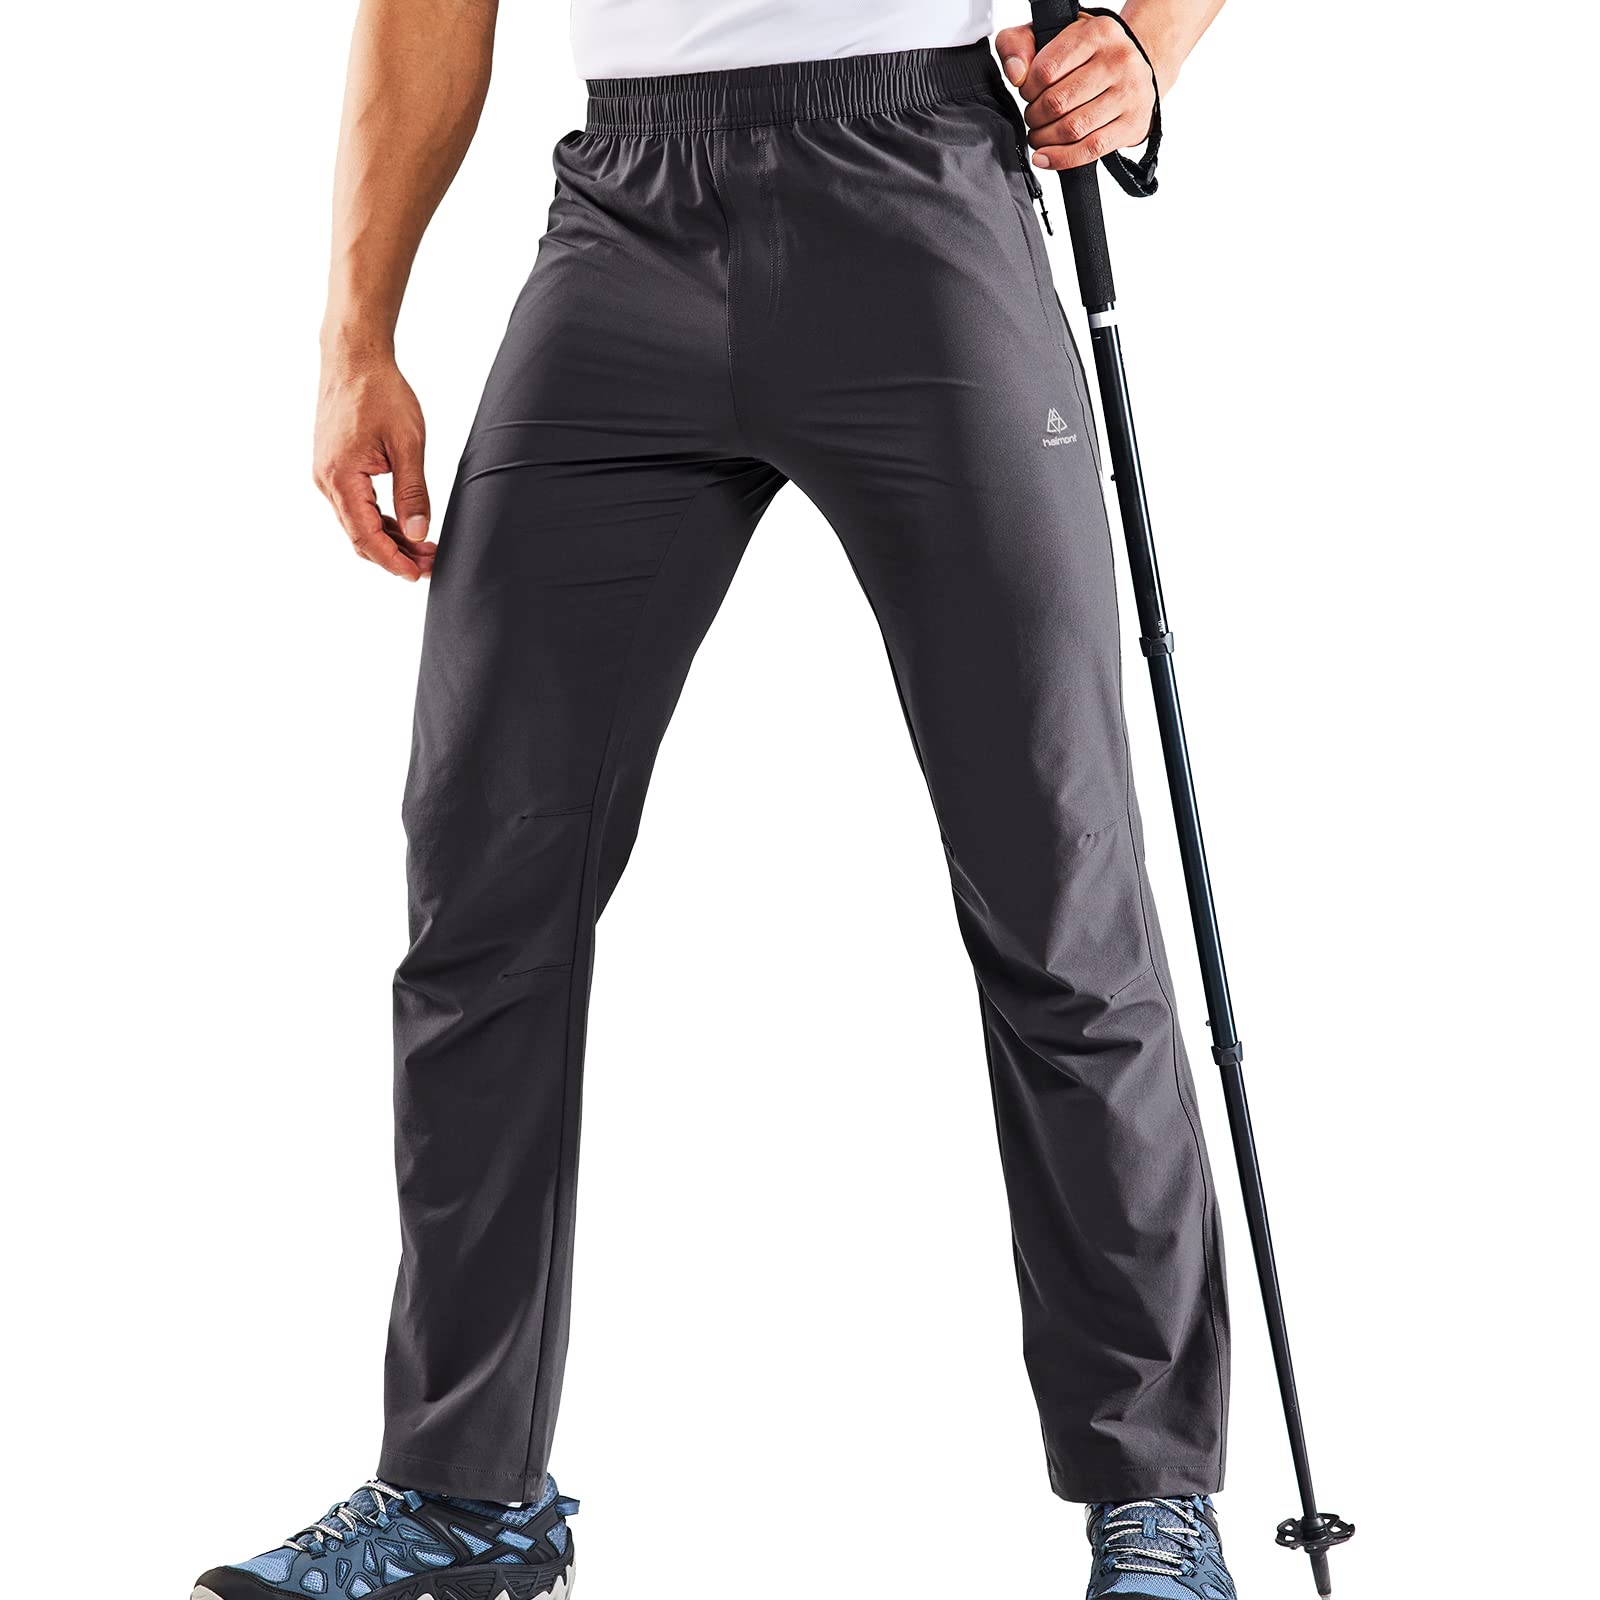 Men's Tactical Pants Quick-dry Lightweight Waterproof Cargo Hiking Pants  hot | eBay